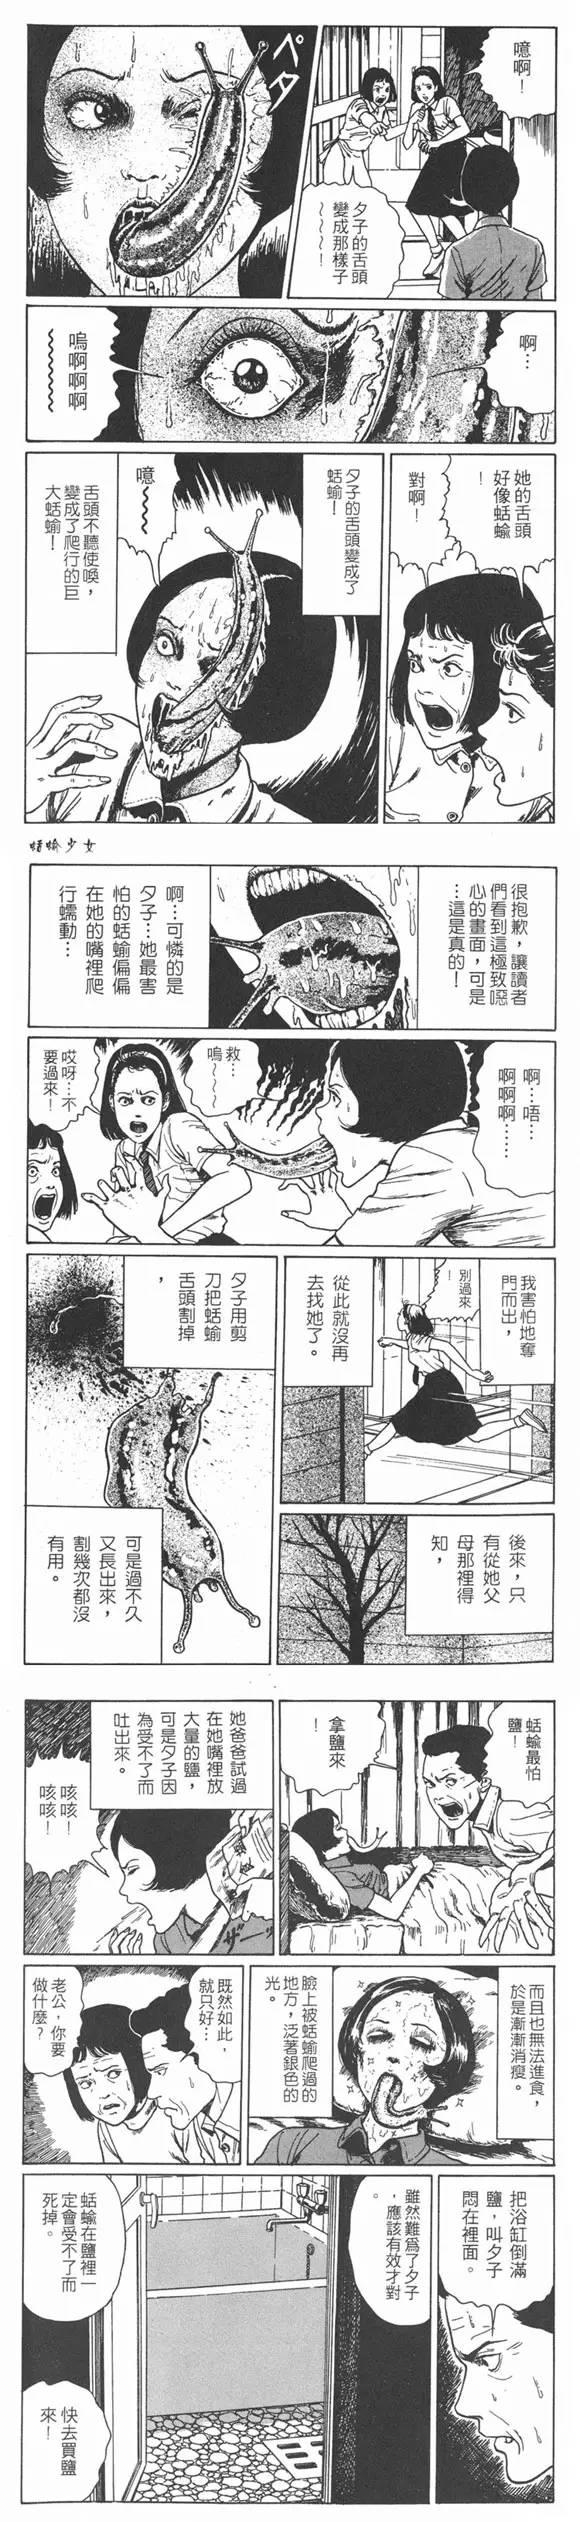 伊藤润二系列恐怖漫画《蛞蝓少女》篇图片